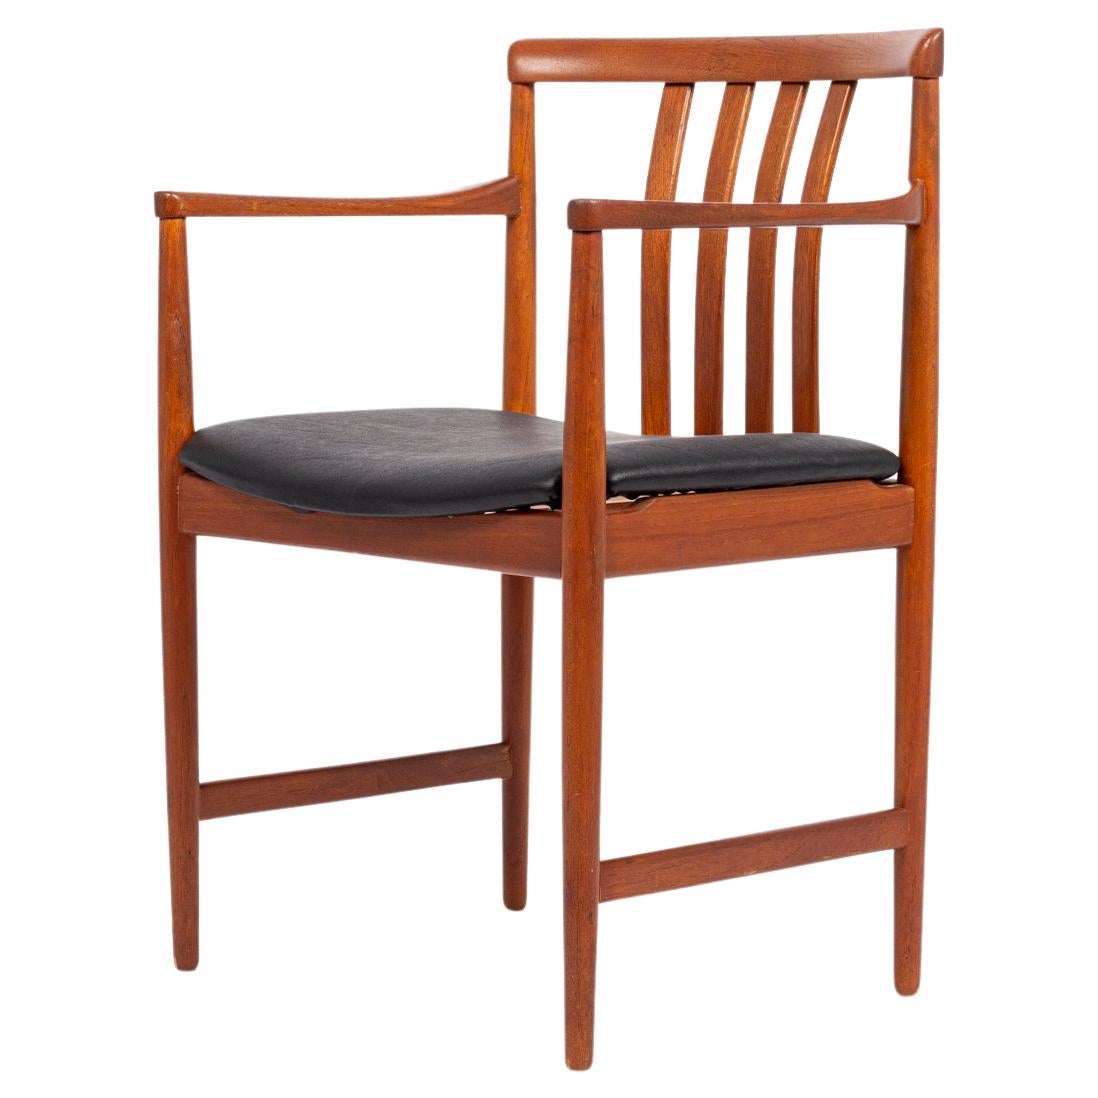 Mid Century Modern Teak Wood Arm Chair by Westnofa